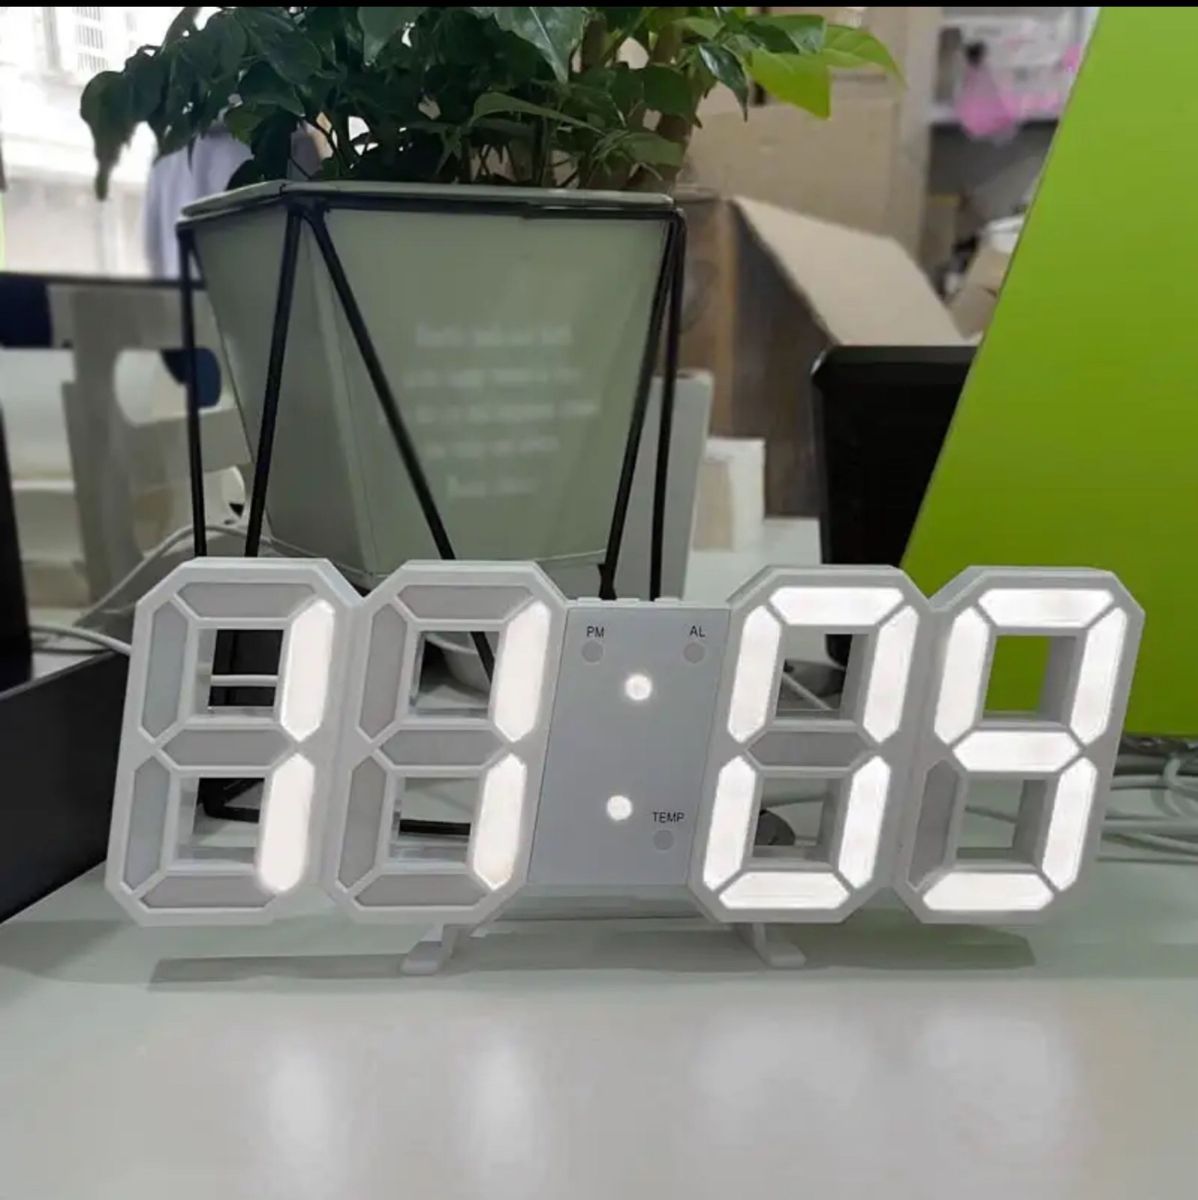 新品未使用 3D時計 置時計 デジタル時計 日本語説明書 人気 立体3D時計